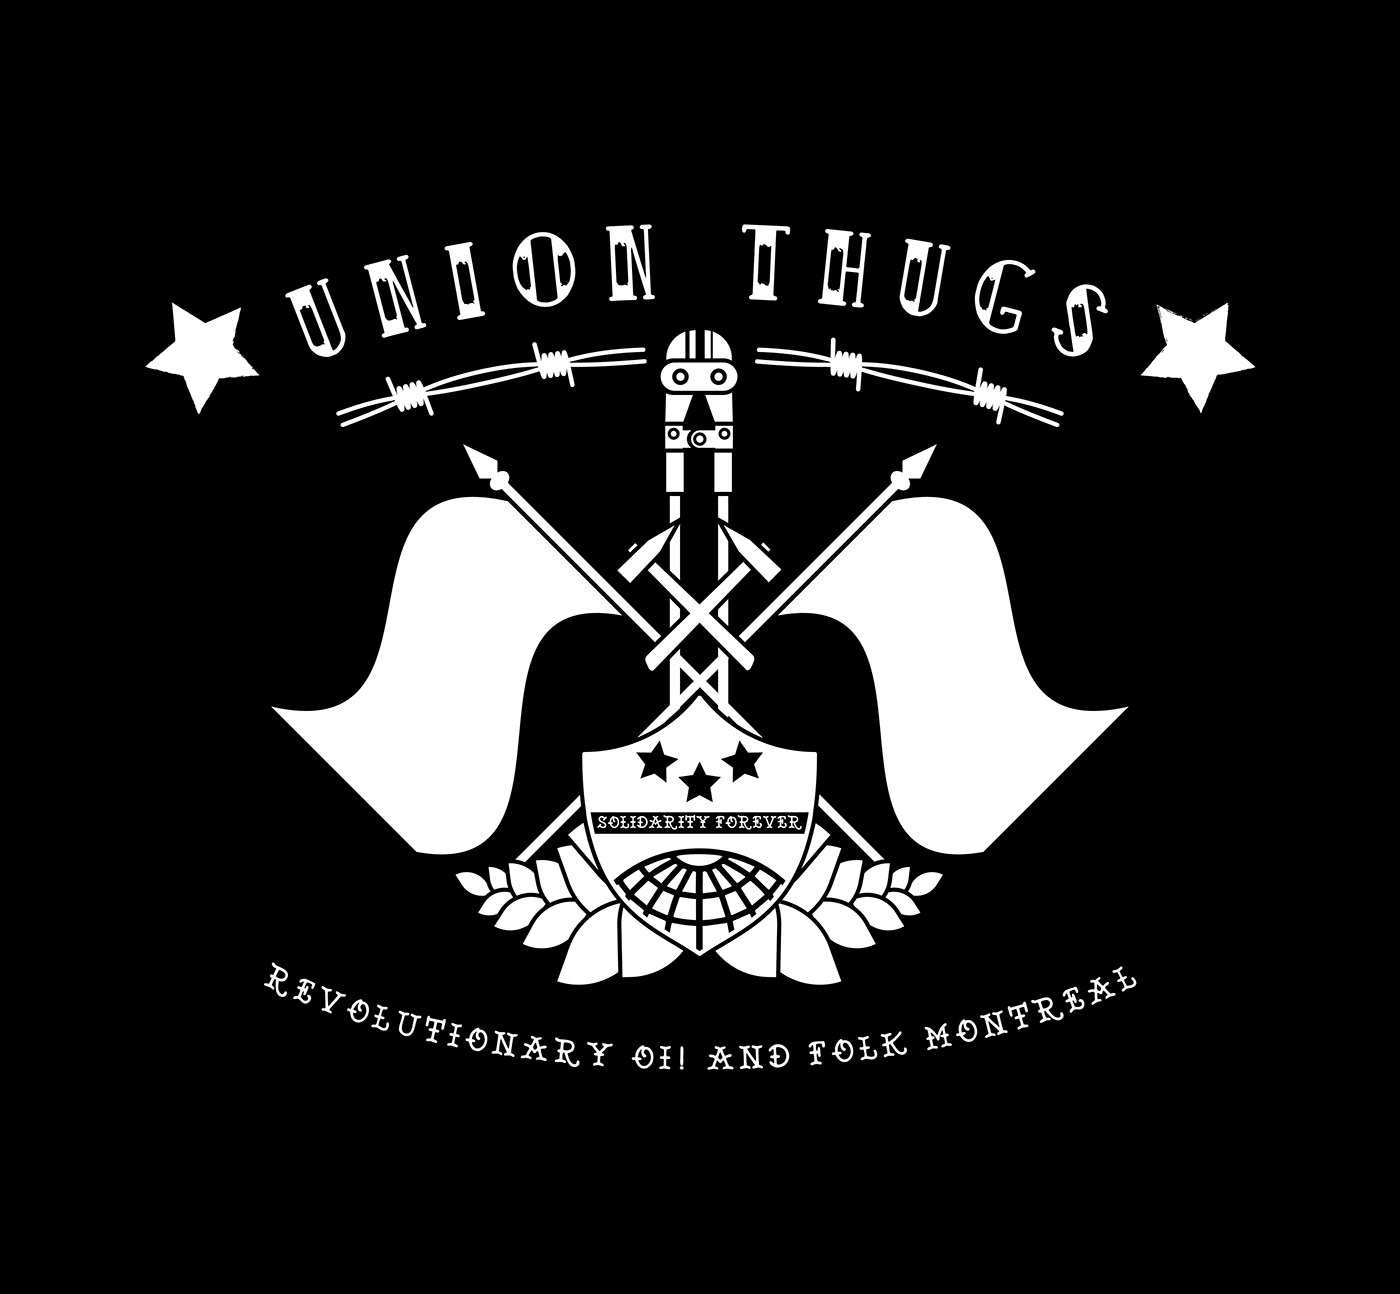 union t-shirt music tour flyer concert band Union Thugs